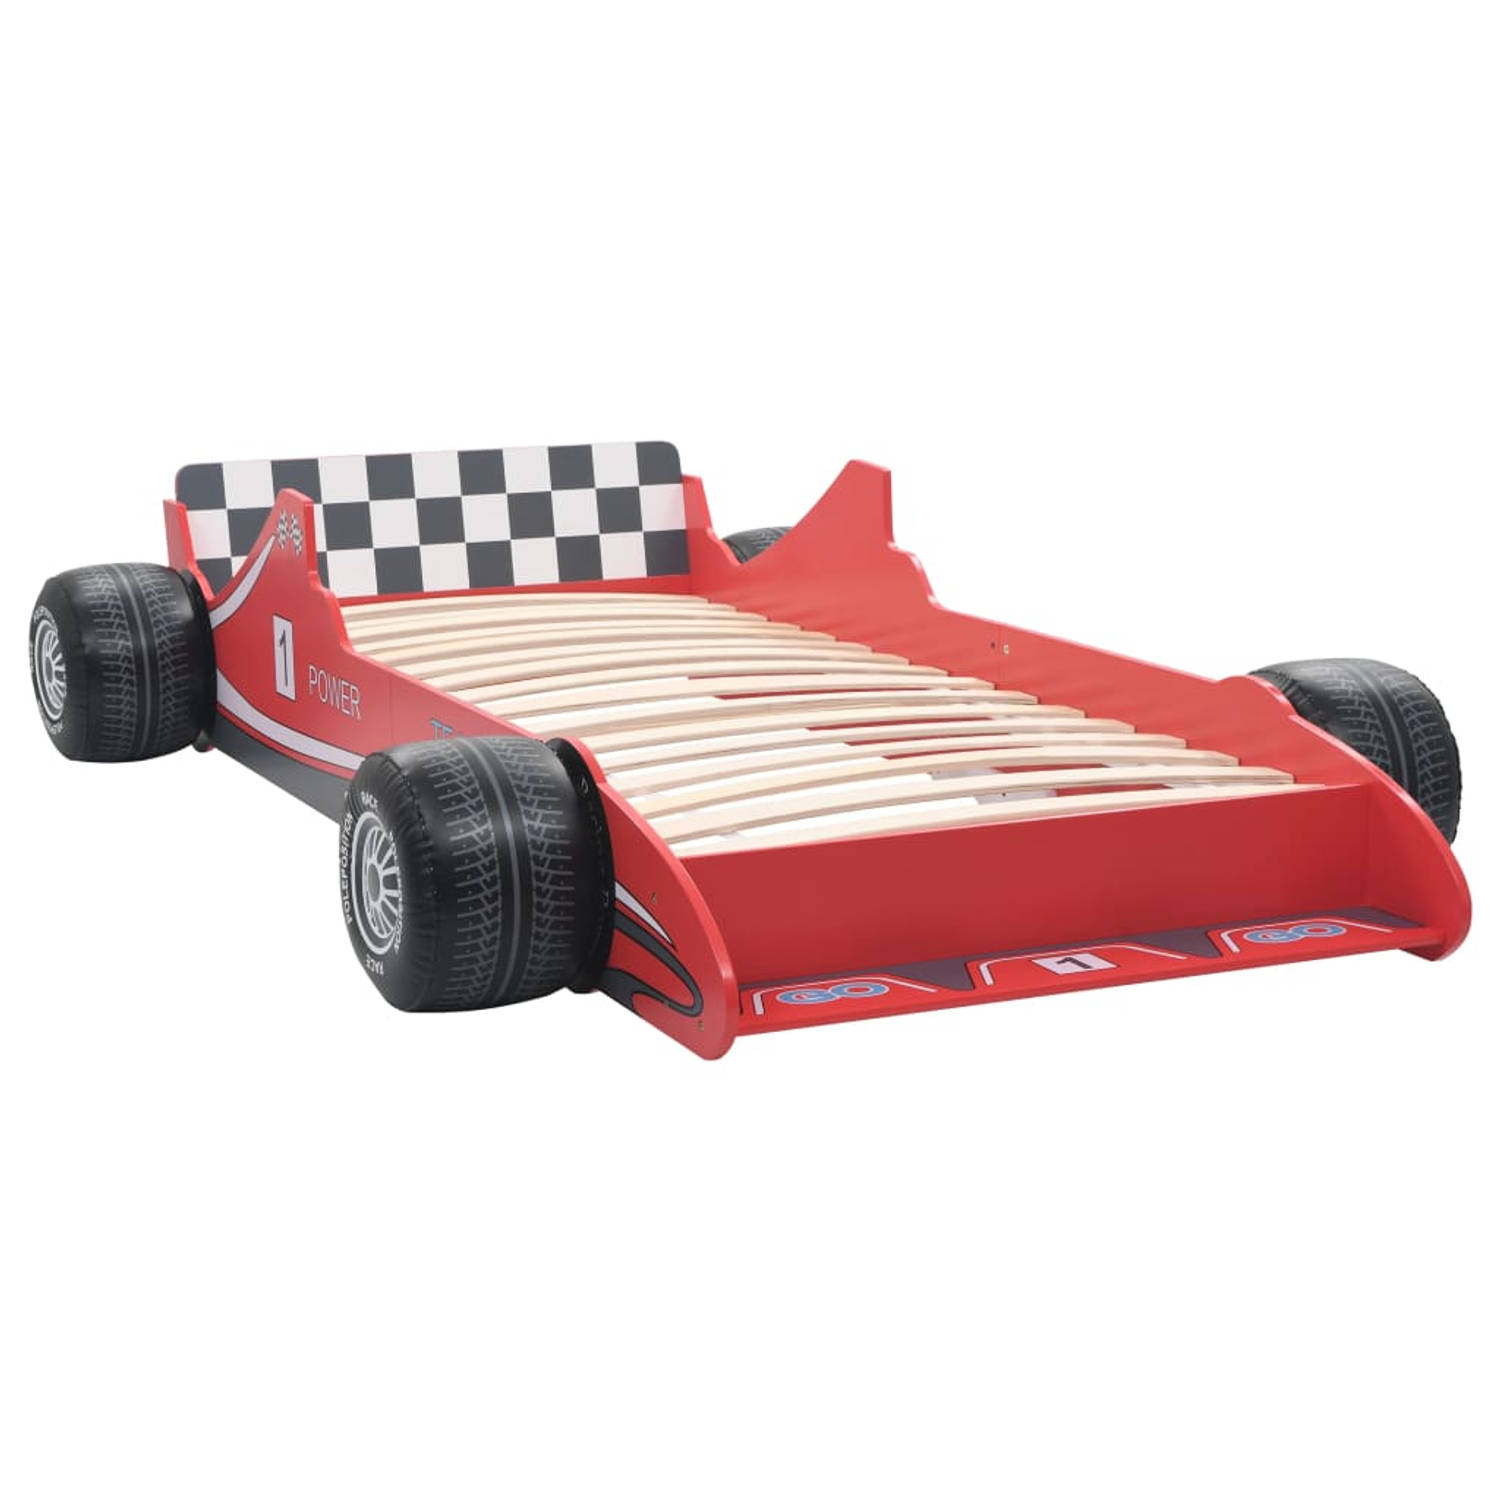 The Living Store Raceauto kinderbed - rood - 229x94.5x47 cm - geschikt voor matras van 90x200 cm - vanaf 4 jaar - The Living Store